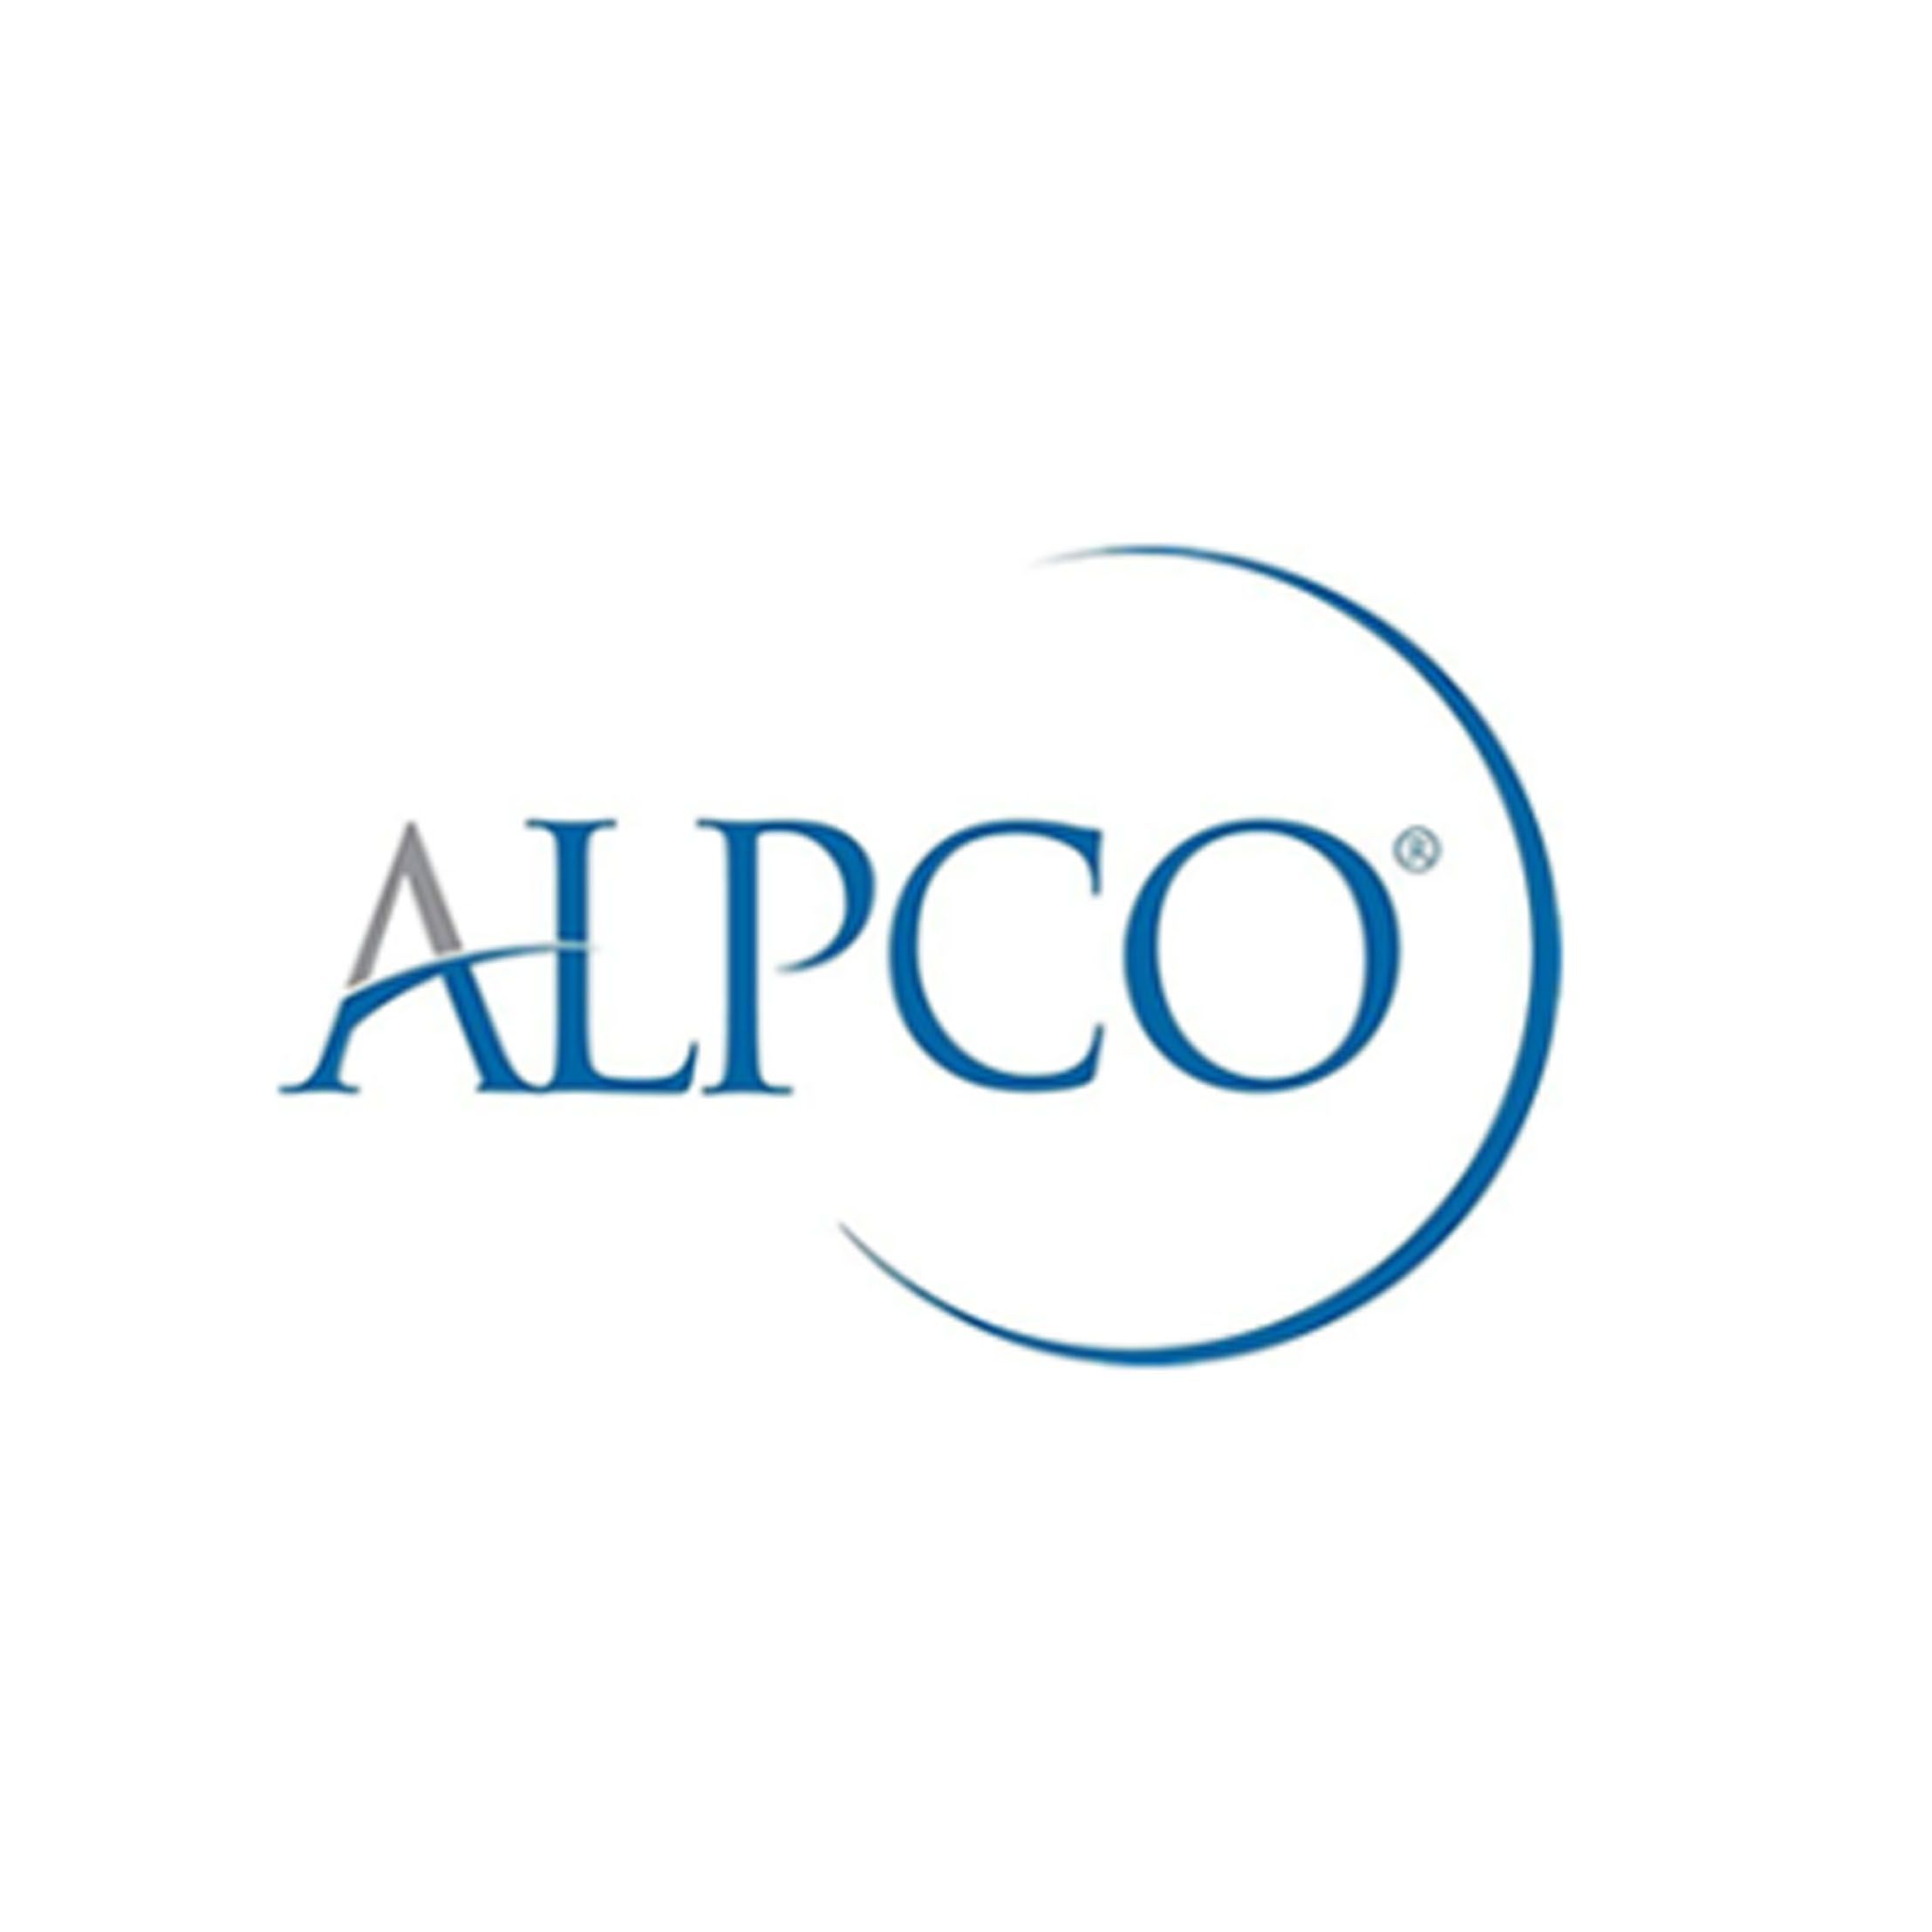 Alpco80-CPTHU-E10 C-Peptide ELISA Jumbo，C肽酶联免疫吸附试验，10 x 96 wells，现货